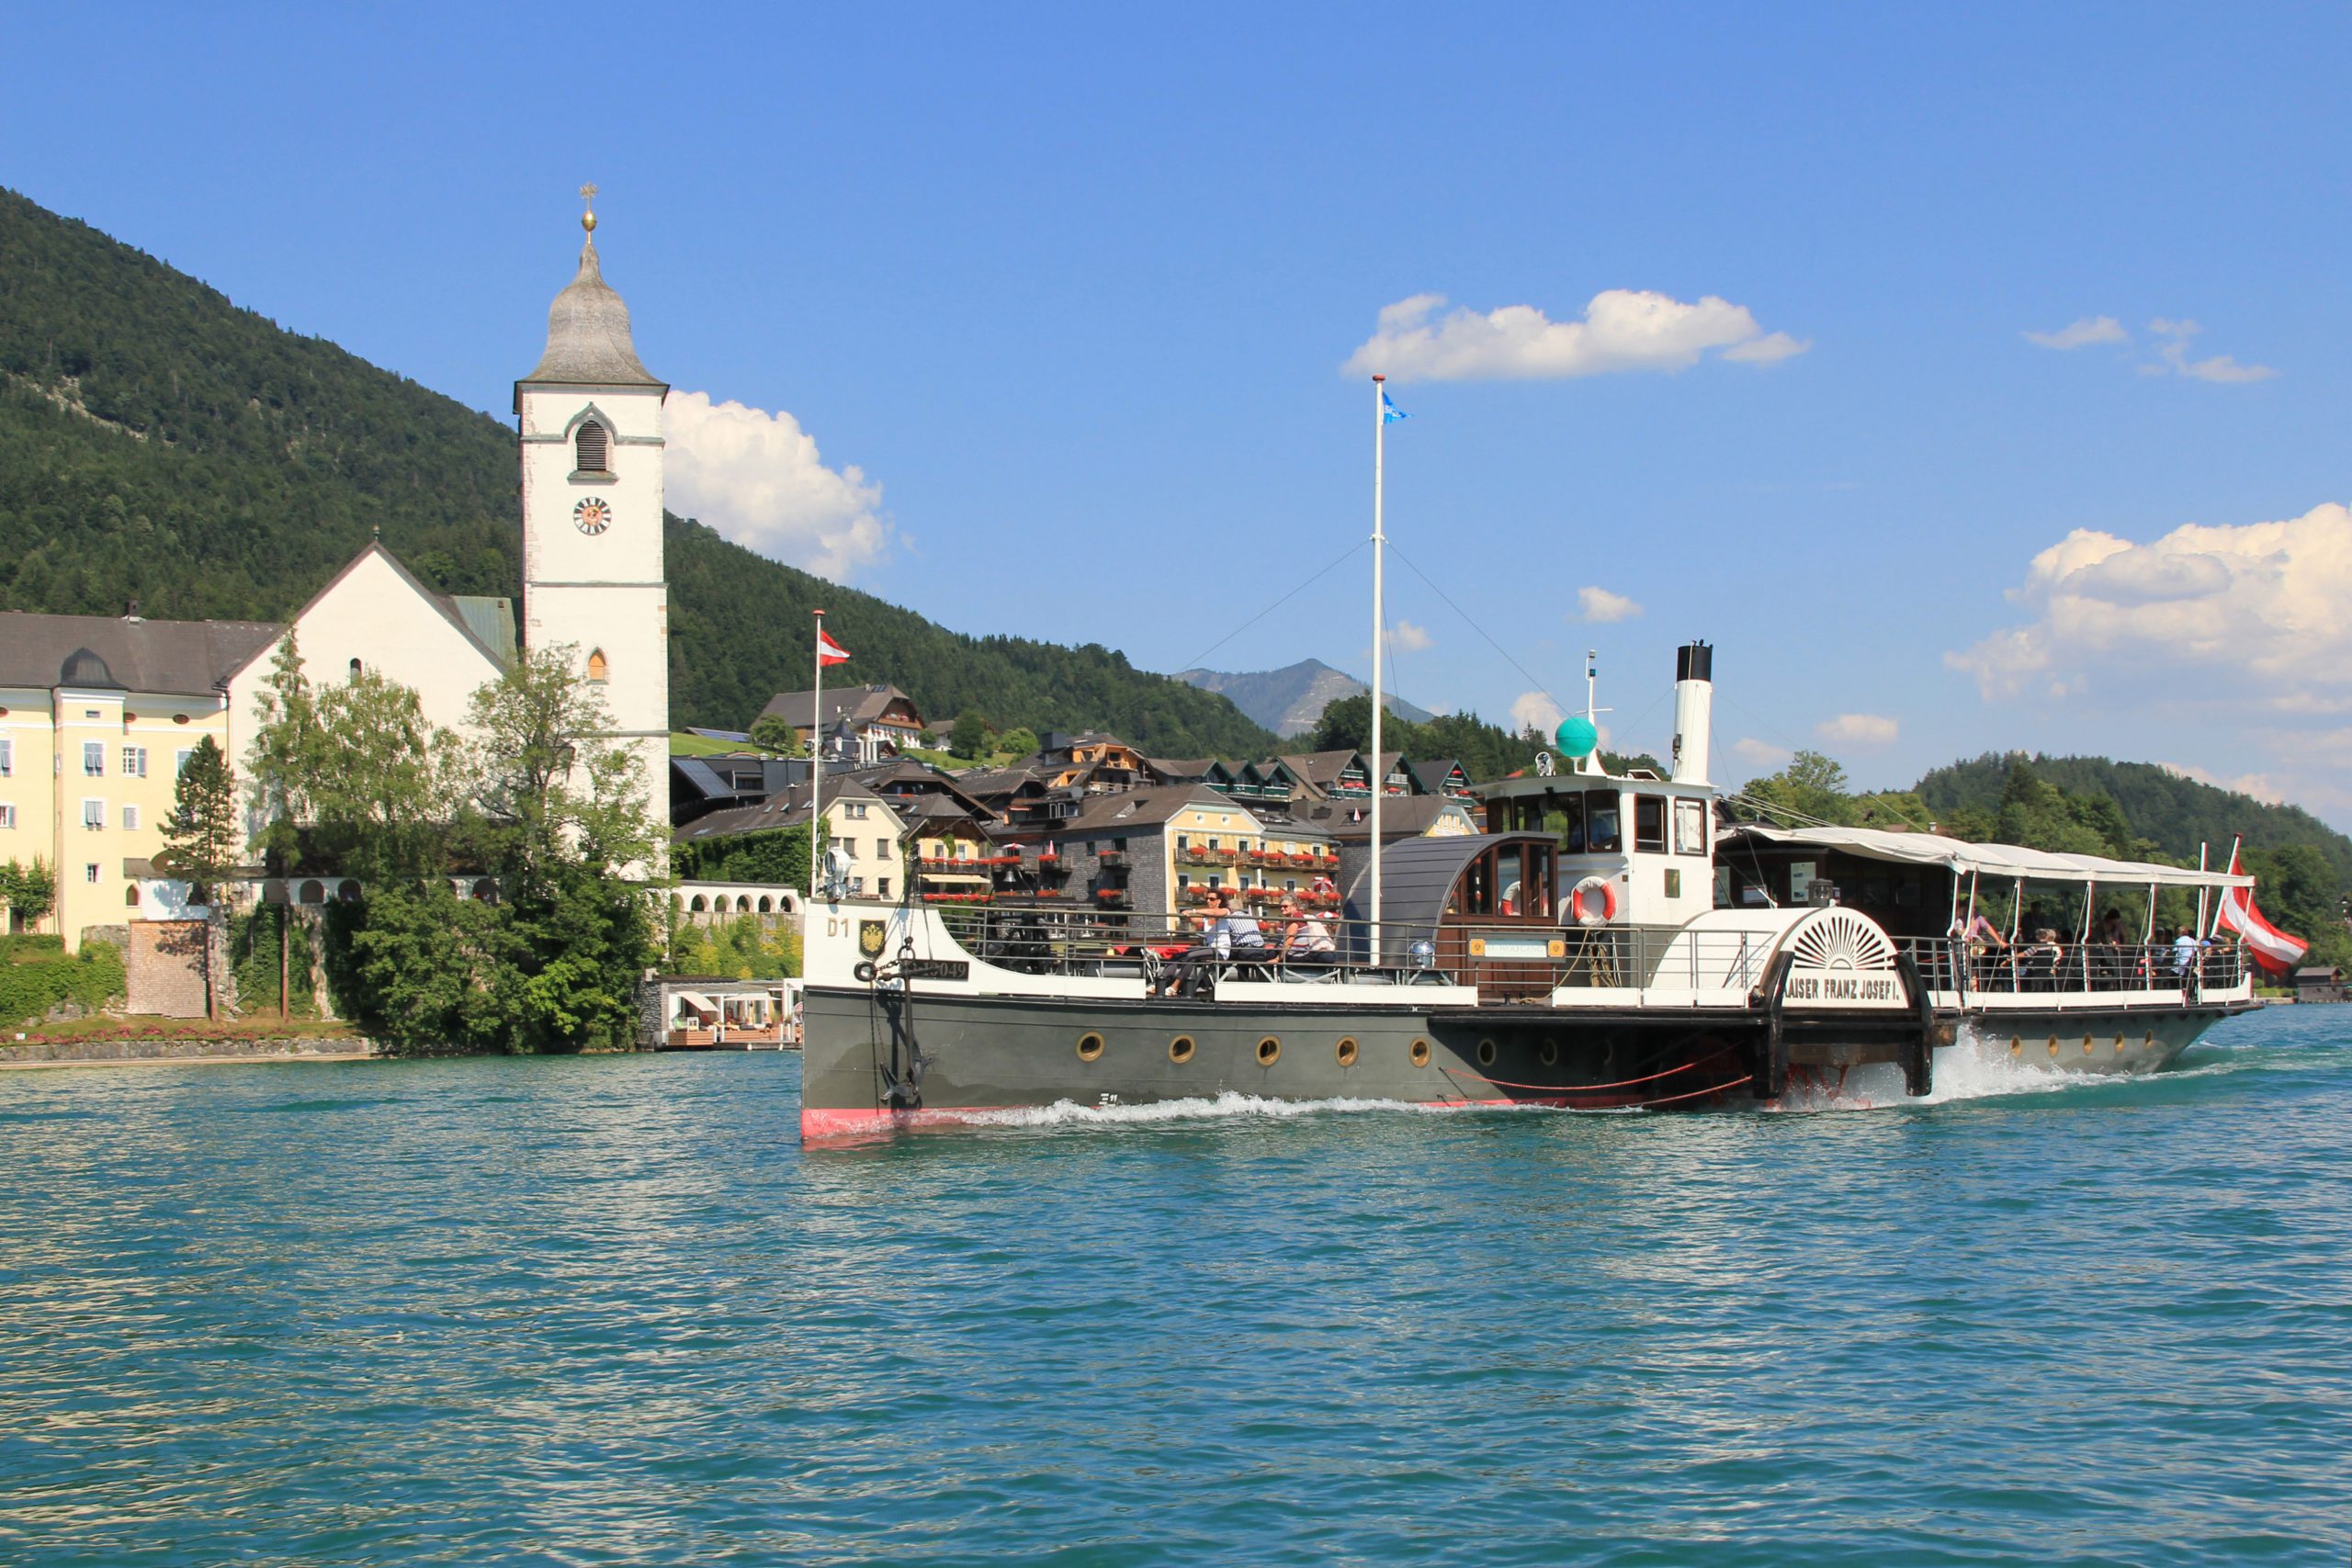 Scheepvaart aan de Wolfgangsee (c) Toerisme Opper-Oostenrijk